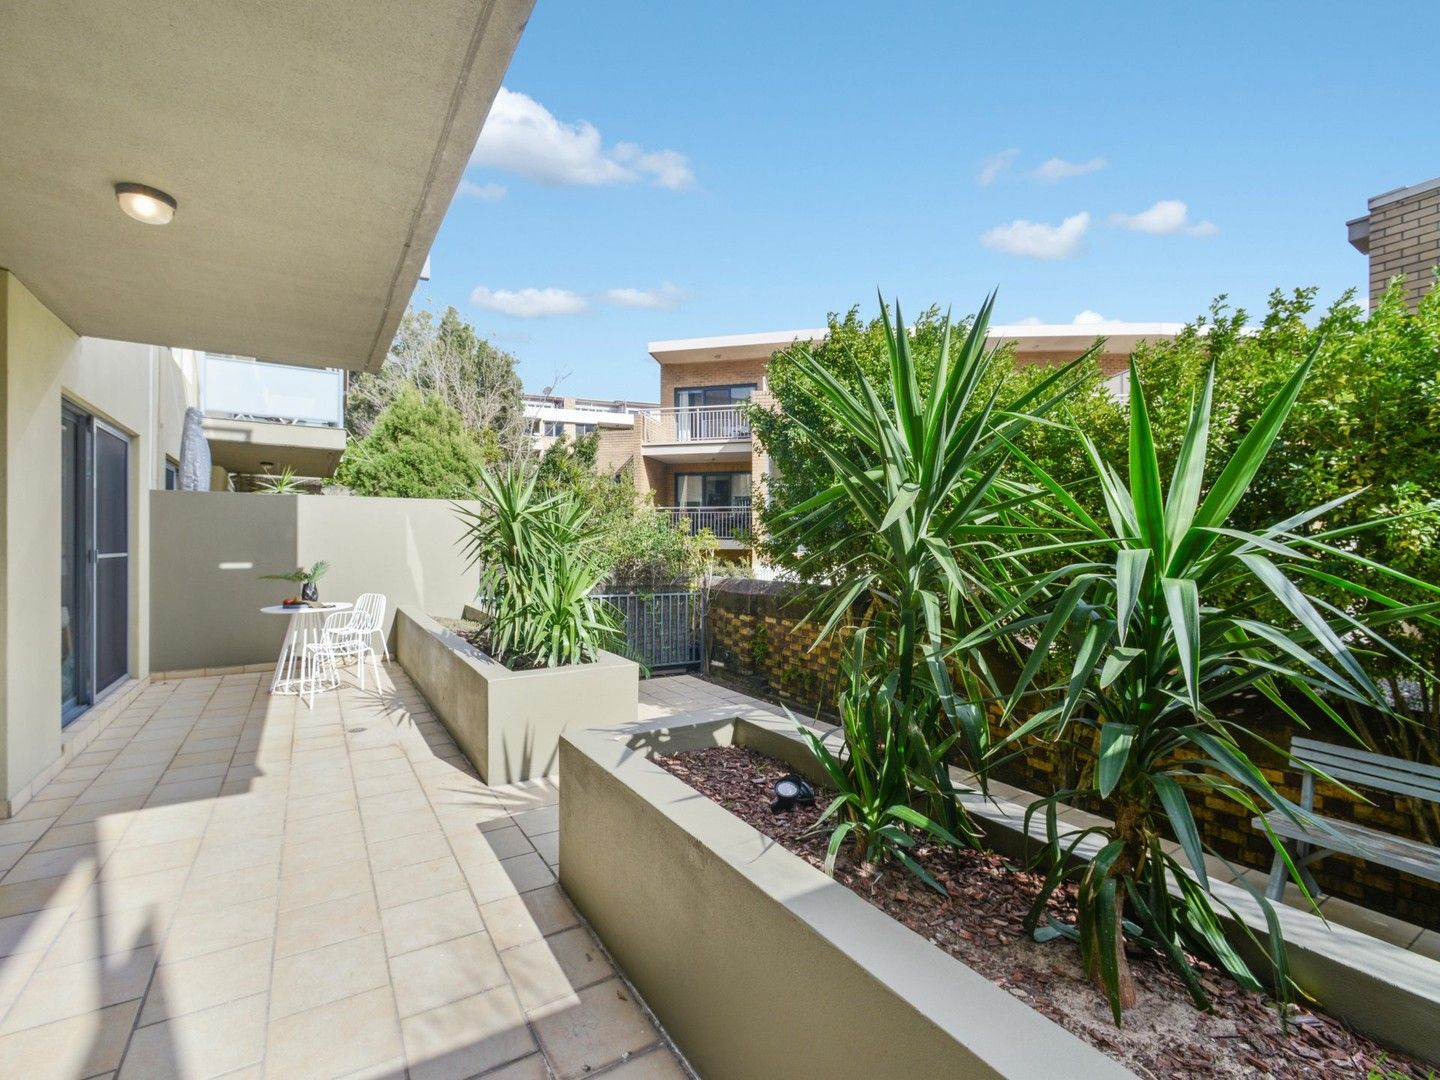 2 bedrooms Terrace in Terrace/6a Cowper Street RANDWICK NSW, 2031